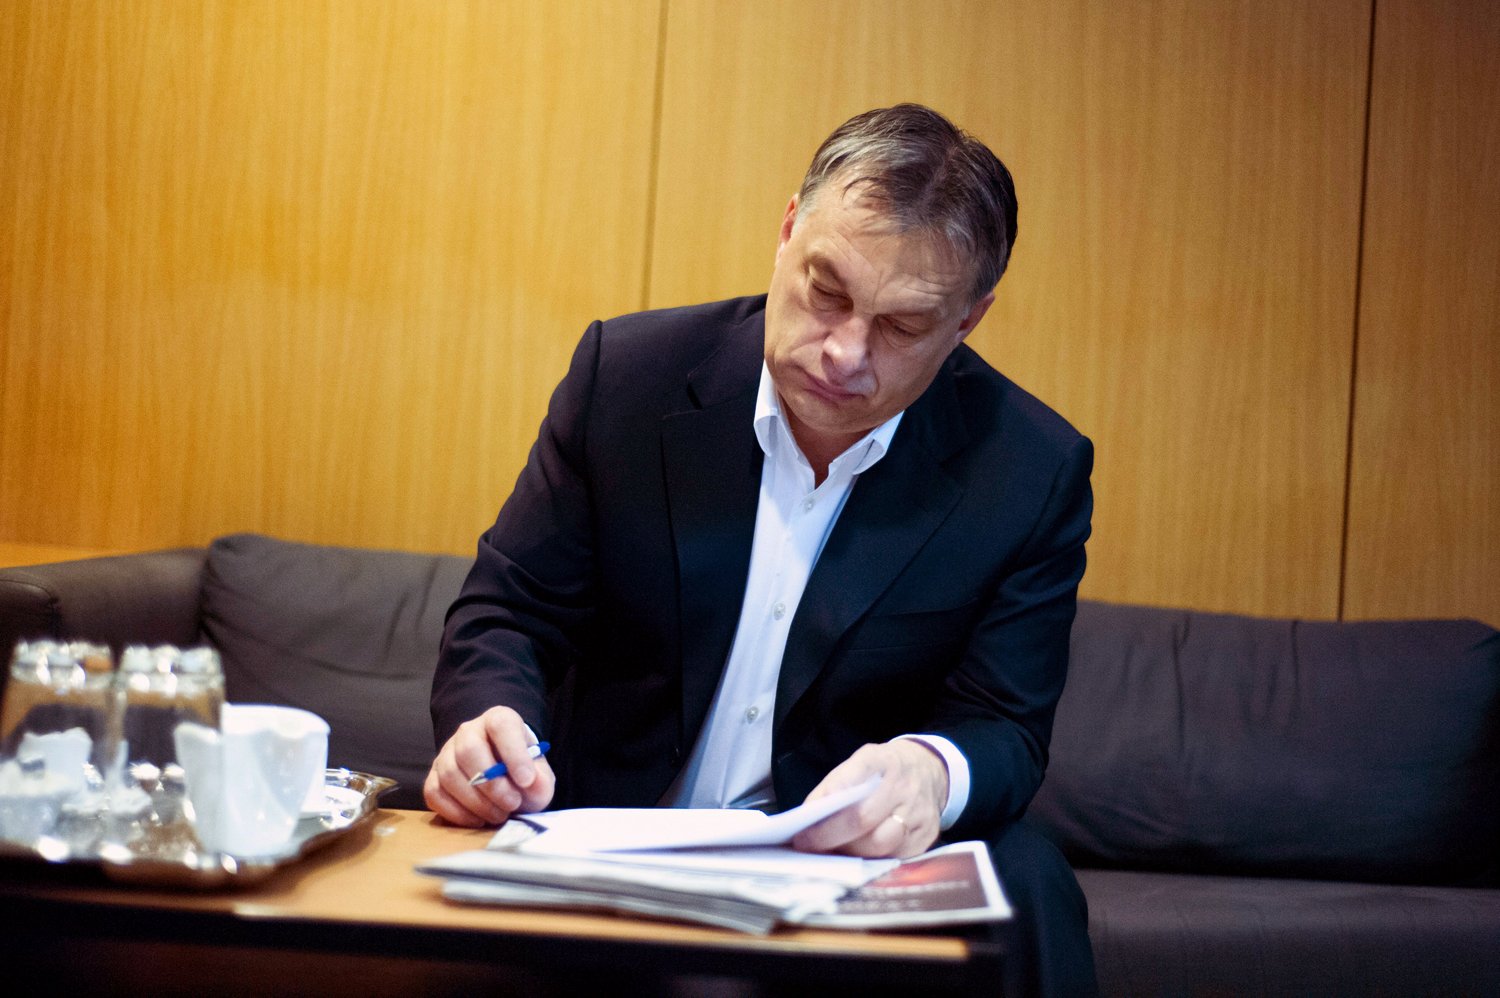 Mindent kitaláltak, mégis átírták a diákok kedvéért - Orbán Viktor a Kossuth Rádió stúdiójában várja az adásidőt